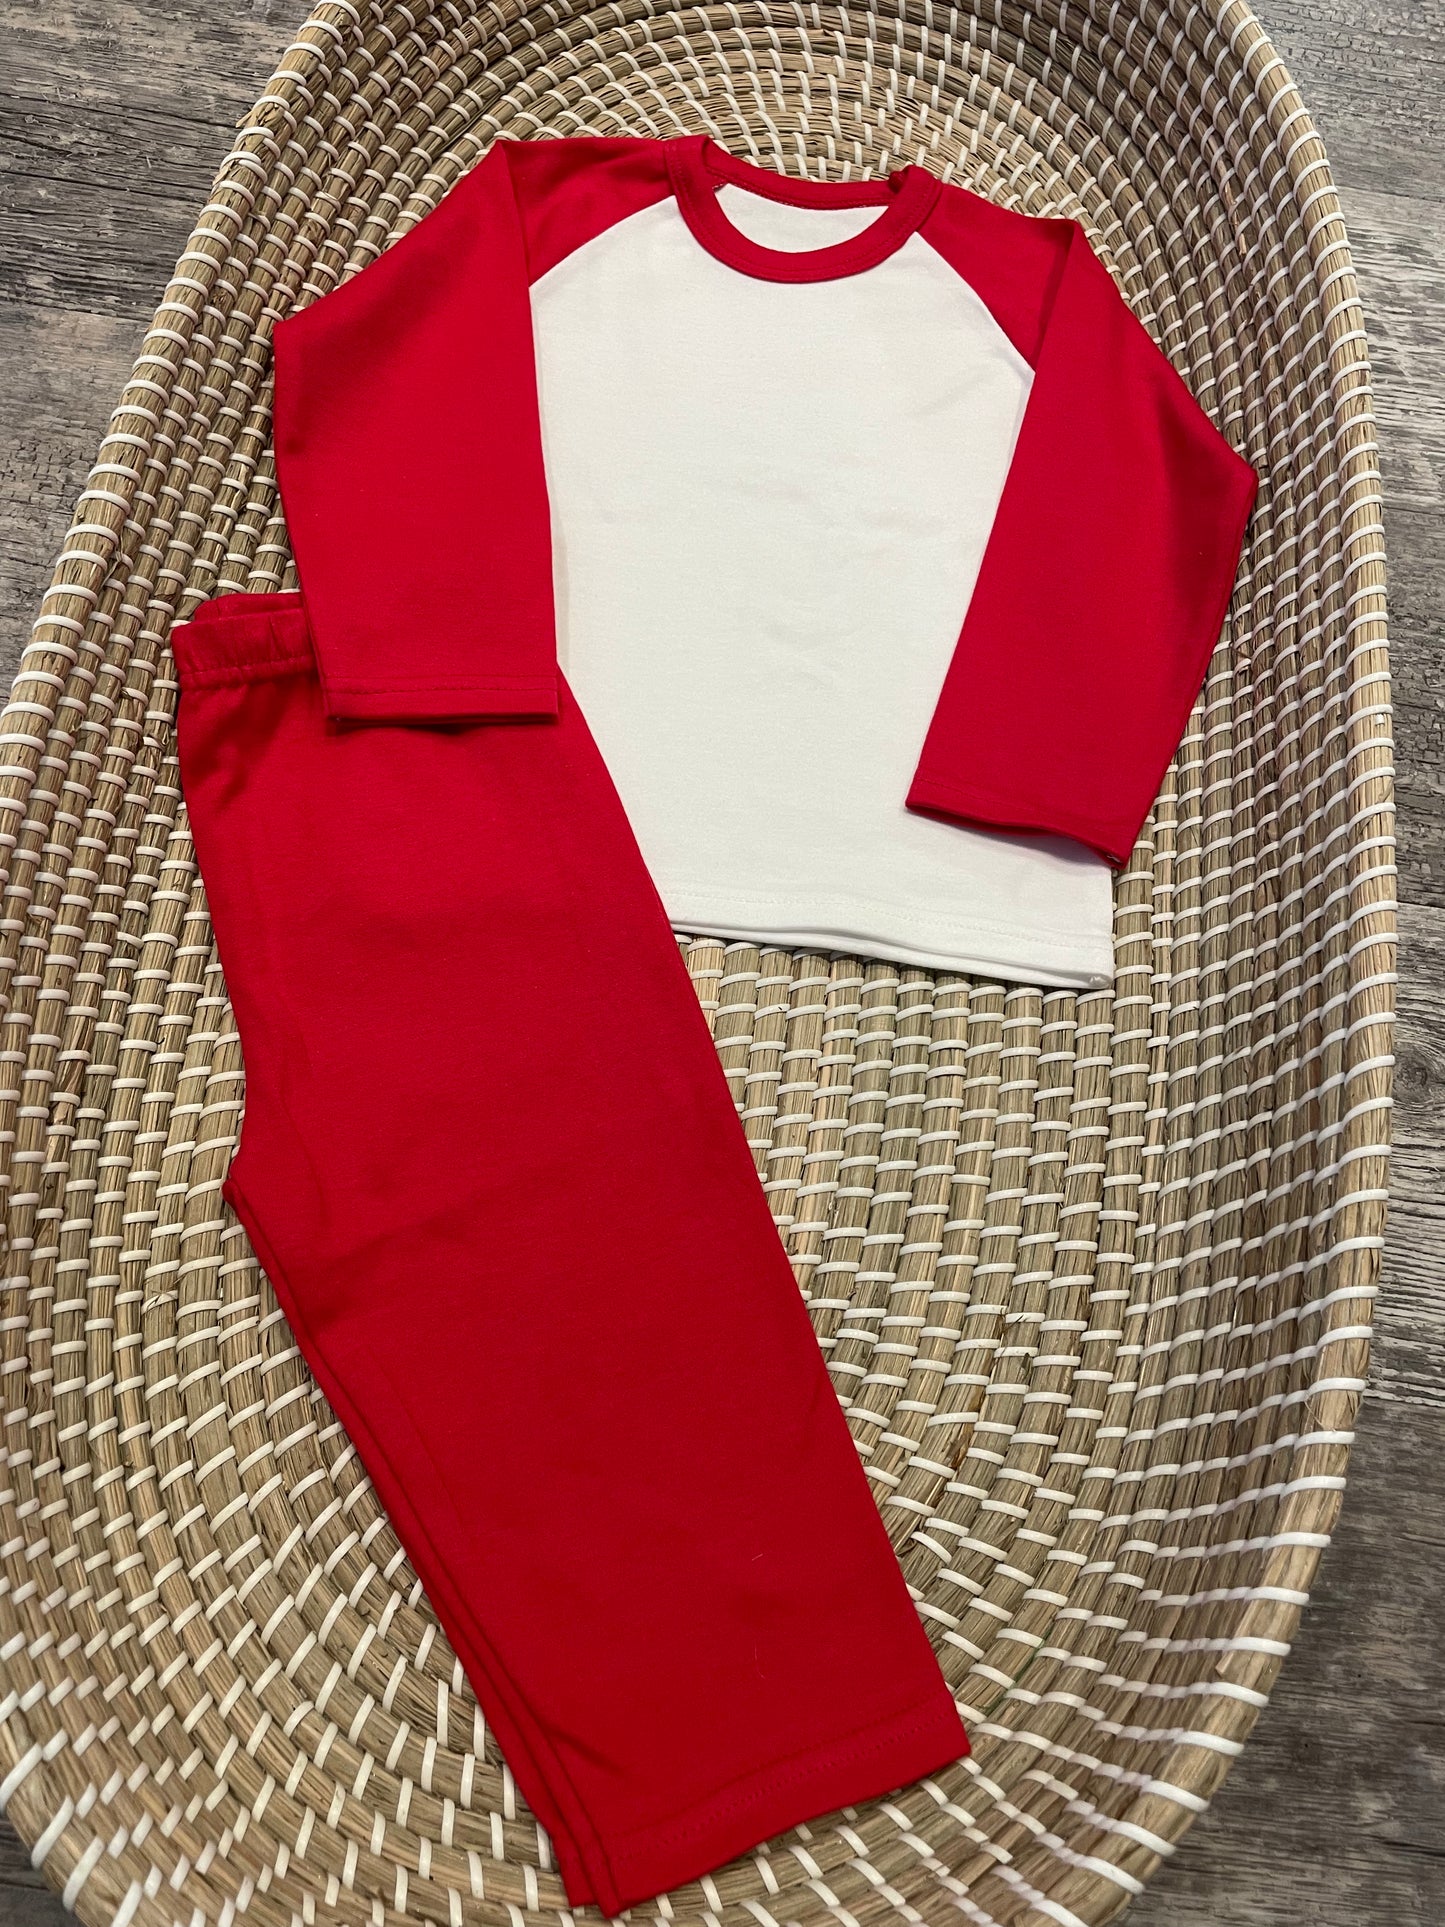 Personalised red & white pyjamas